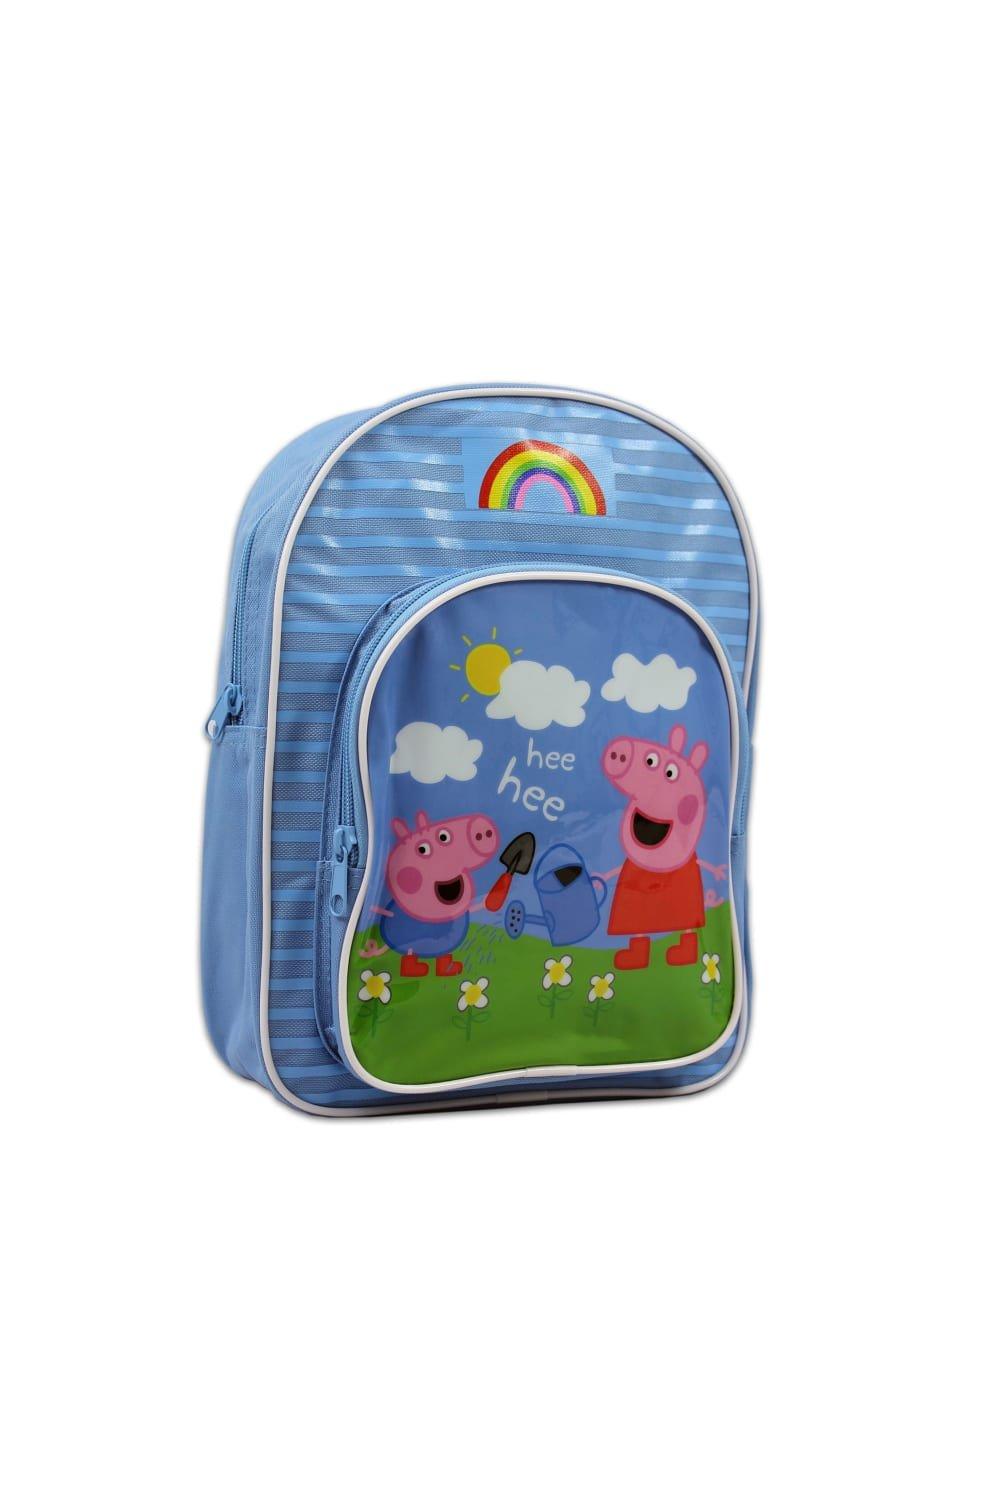 Детский рюкзак Peppa Pig, синий детская сумка детская школьная сумка мультяшный рюкзак для детского сада школьные сумки детская сумка детские сумки